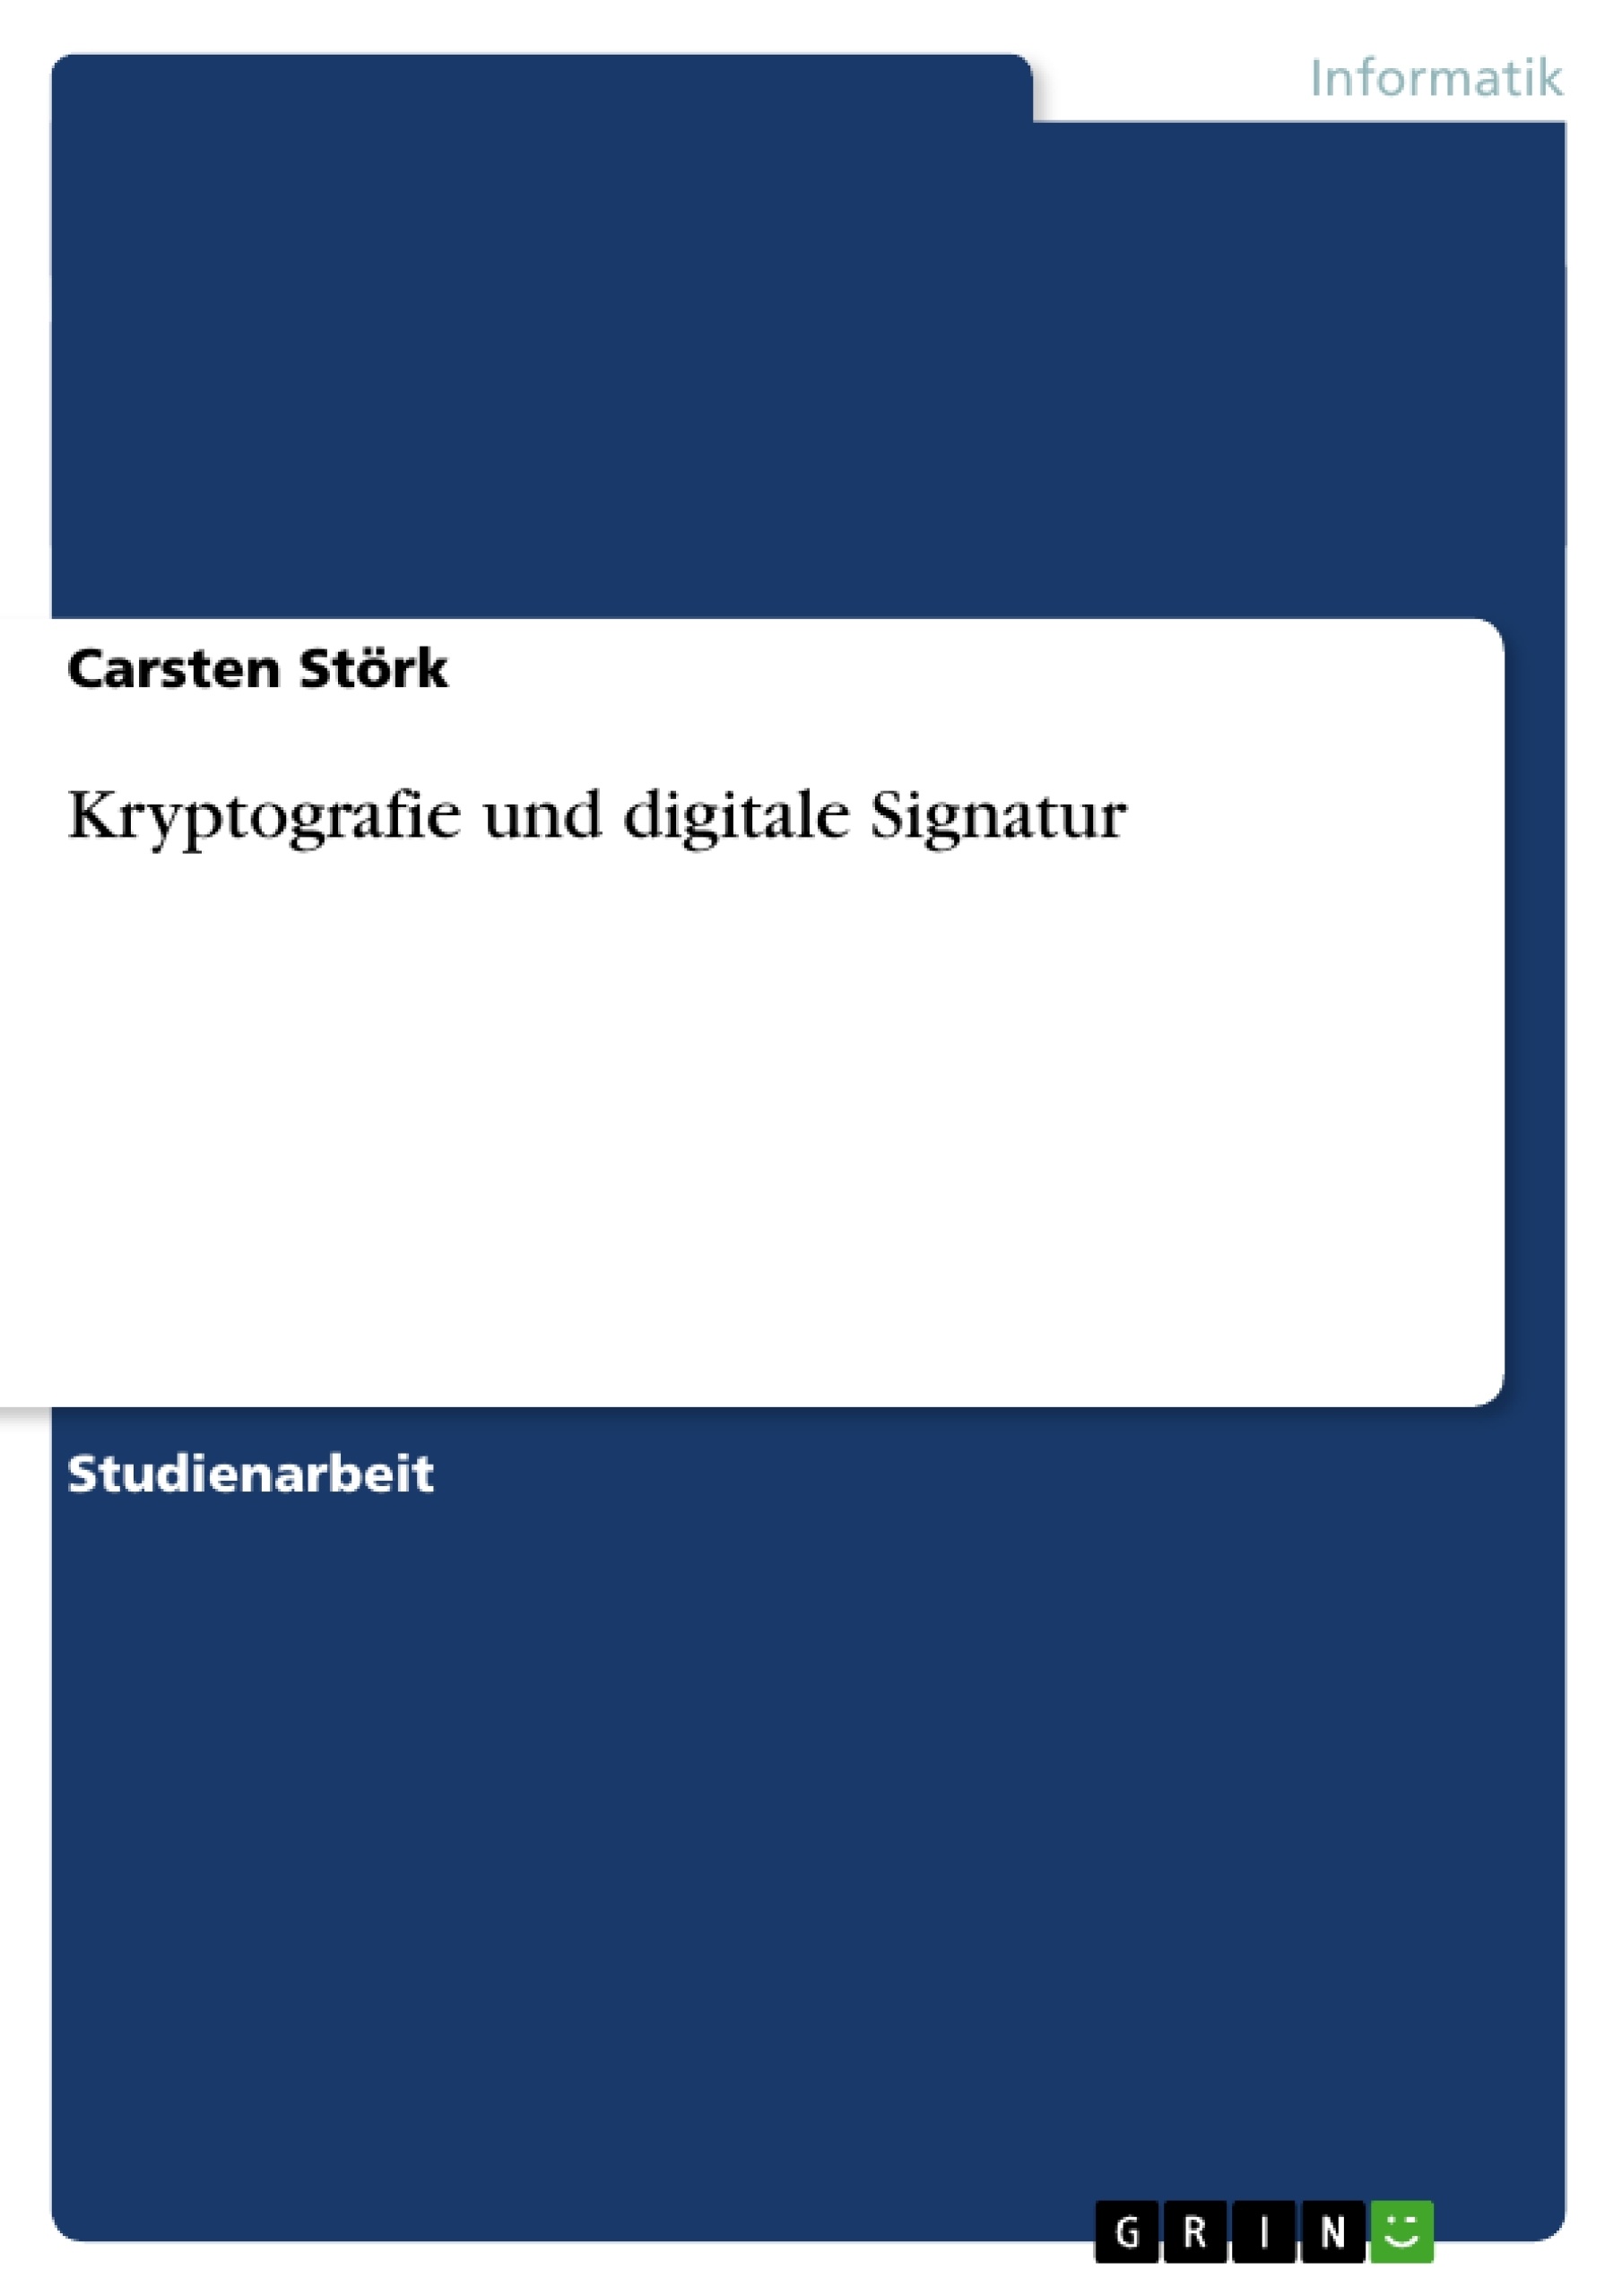 Title: Kryptografie und digitale Signatur